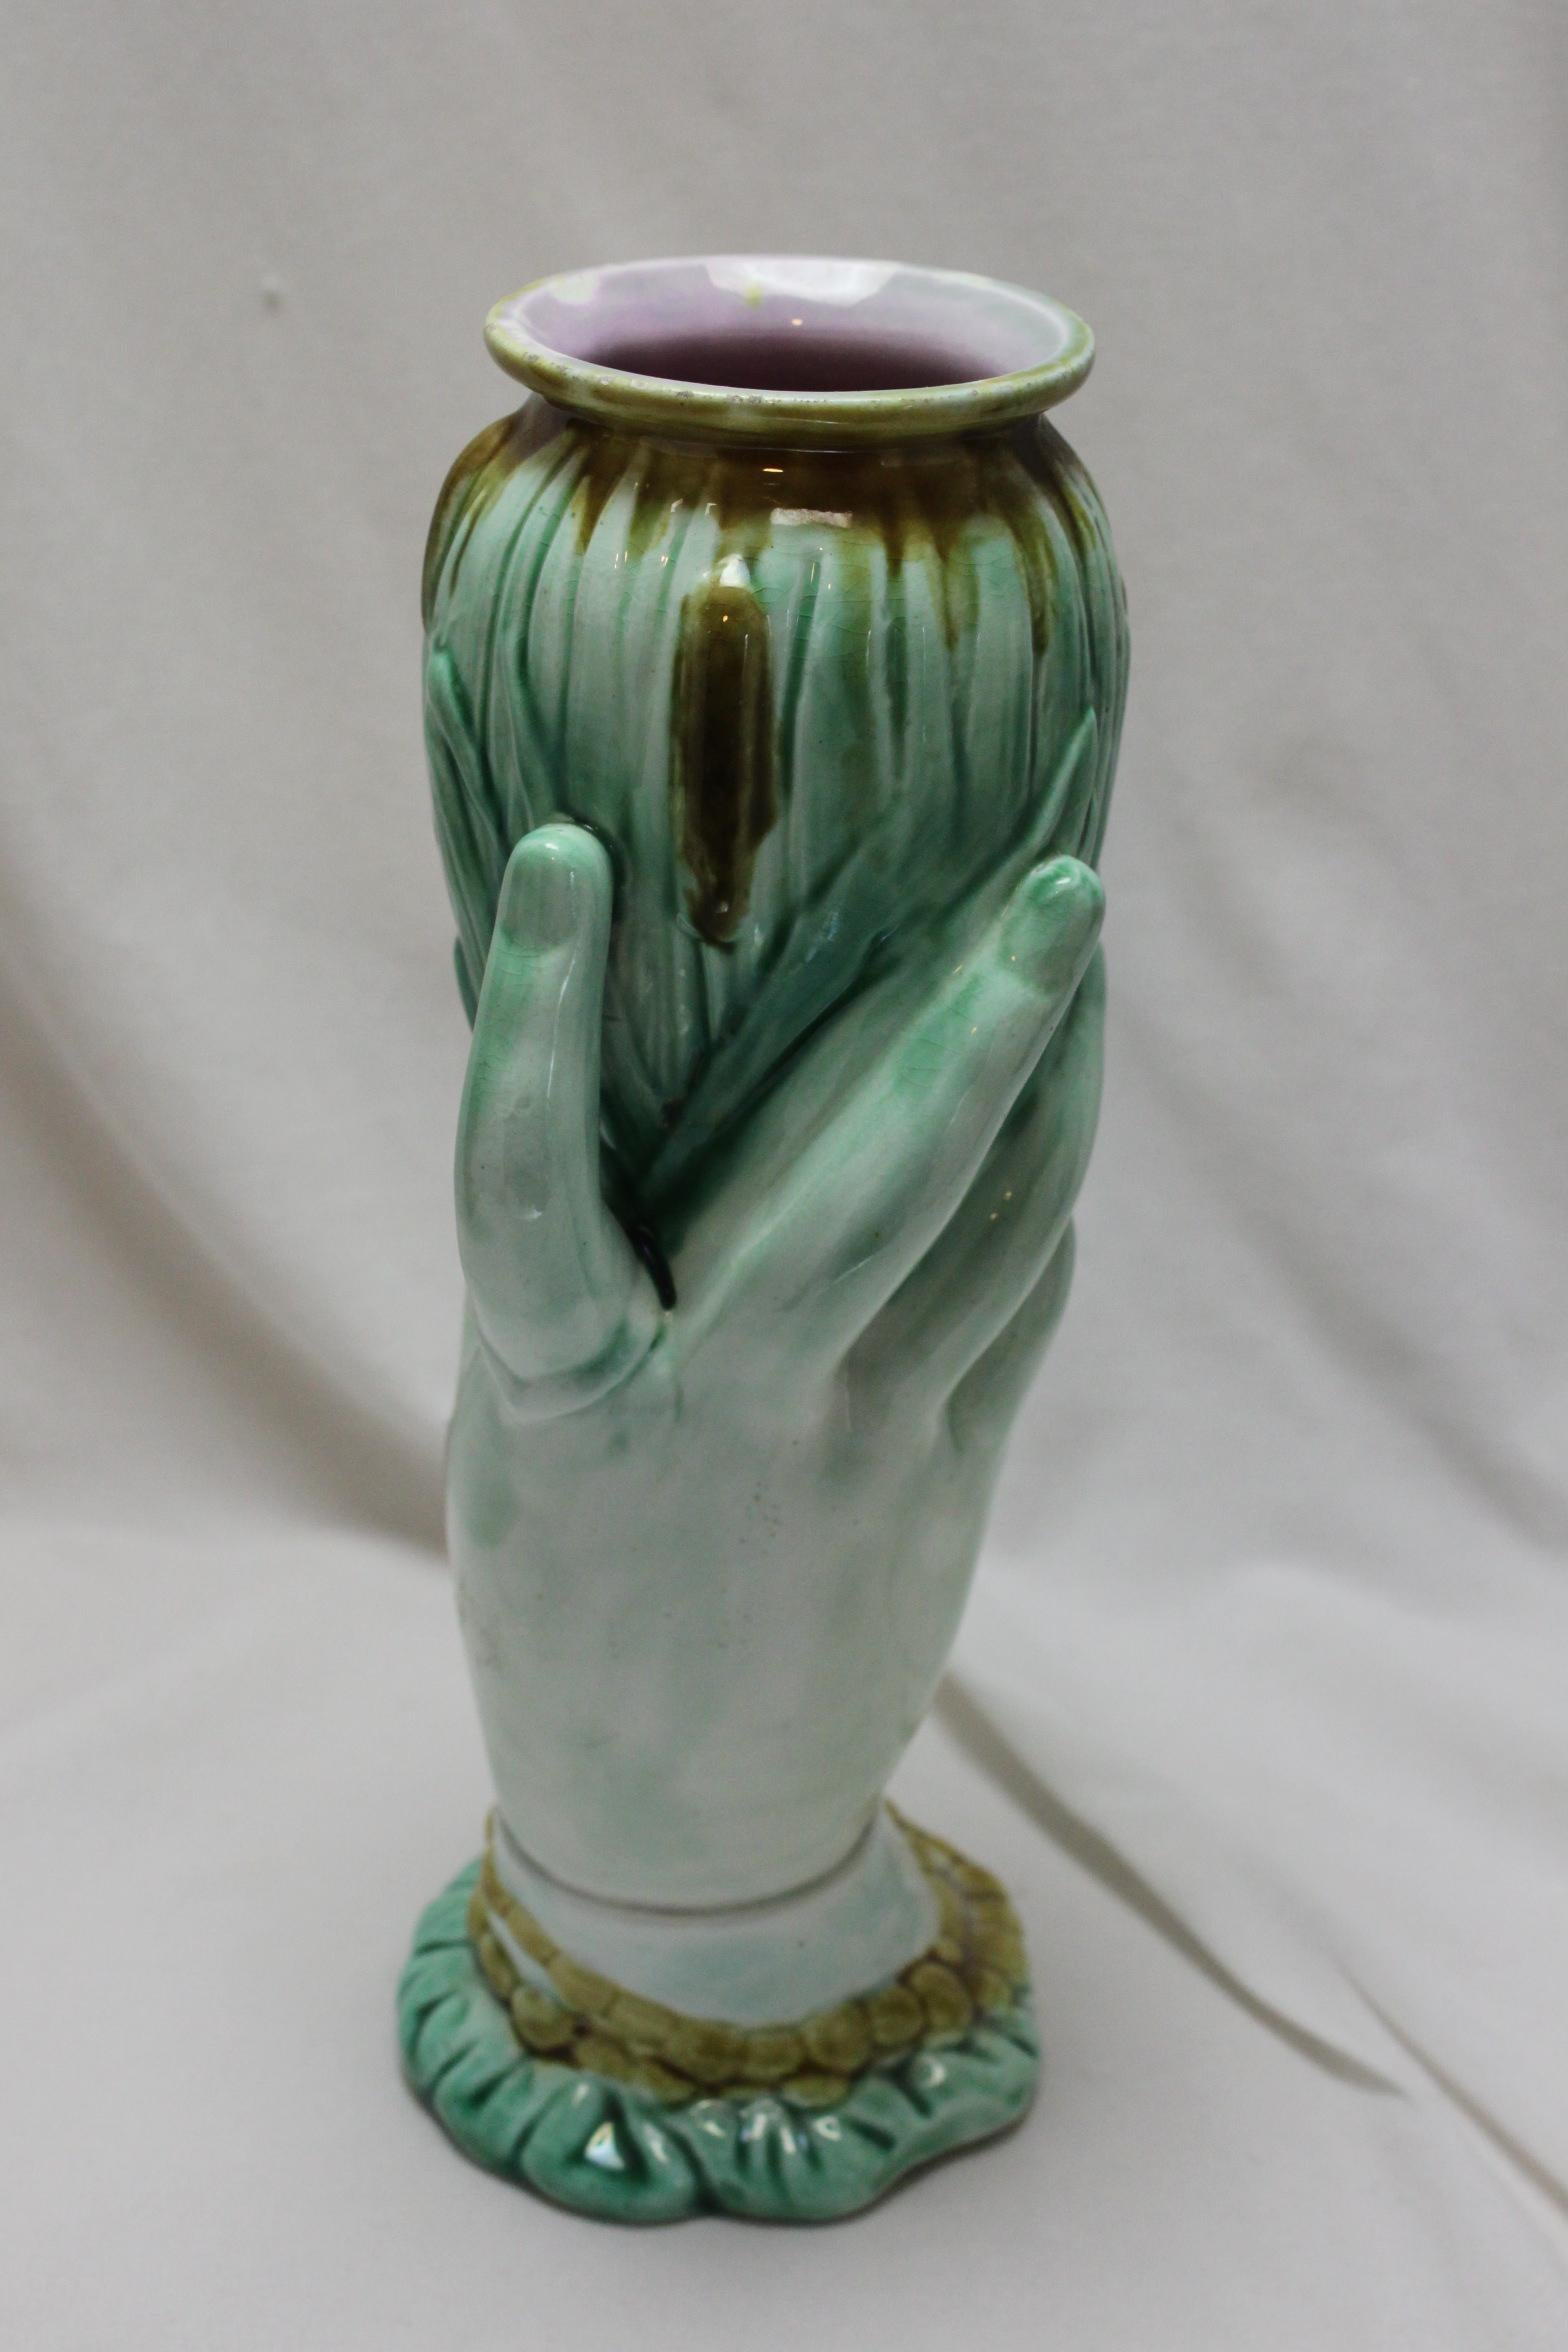 Diese glasierte Majolika-Vase besteht aus einer Frau, die in der Hand eine Reihe von Kugeln hält, die den Teil der Vase bilden. Ihr Handgelenk ist mit einer Rüschenärmeln bekleidet, über denen ein Perlenarmband liegt, und sie hat einen